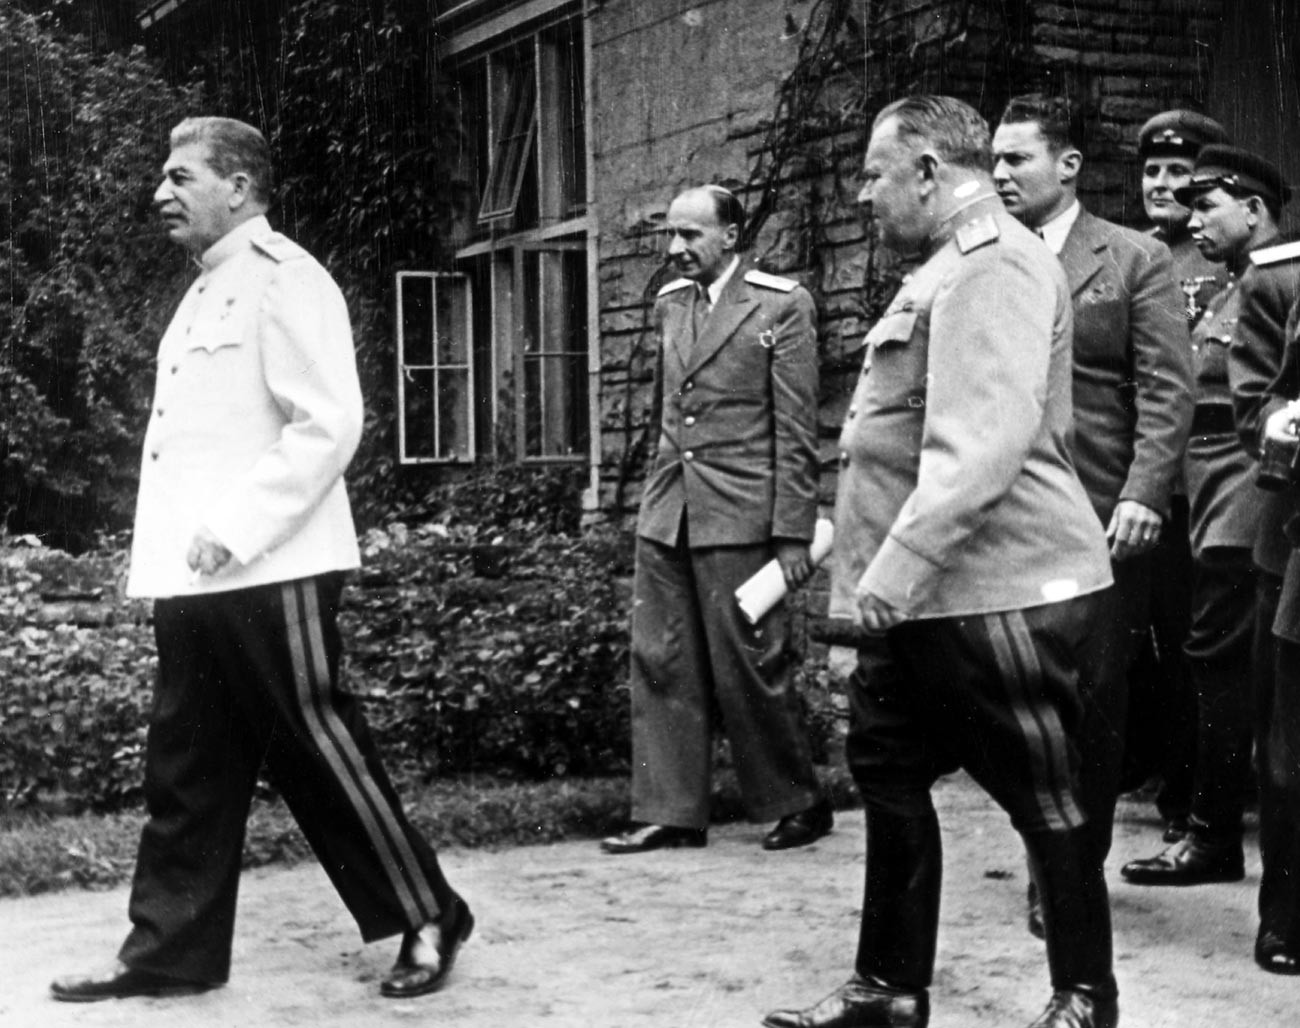 Sovjetski vođa Josif Staljin u bijeloj vojničkoj bluzi s ostalim vojnim licima na Potsdamskoj konferenciji u srpnju 1945. godine.